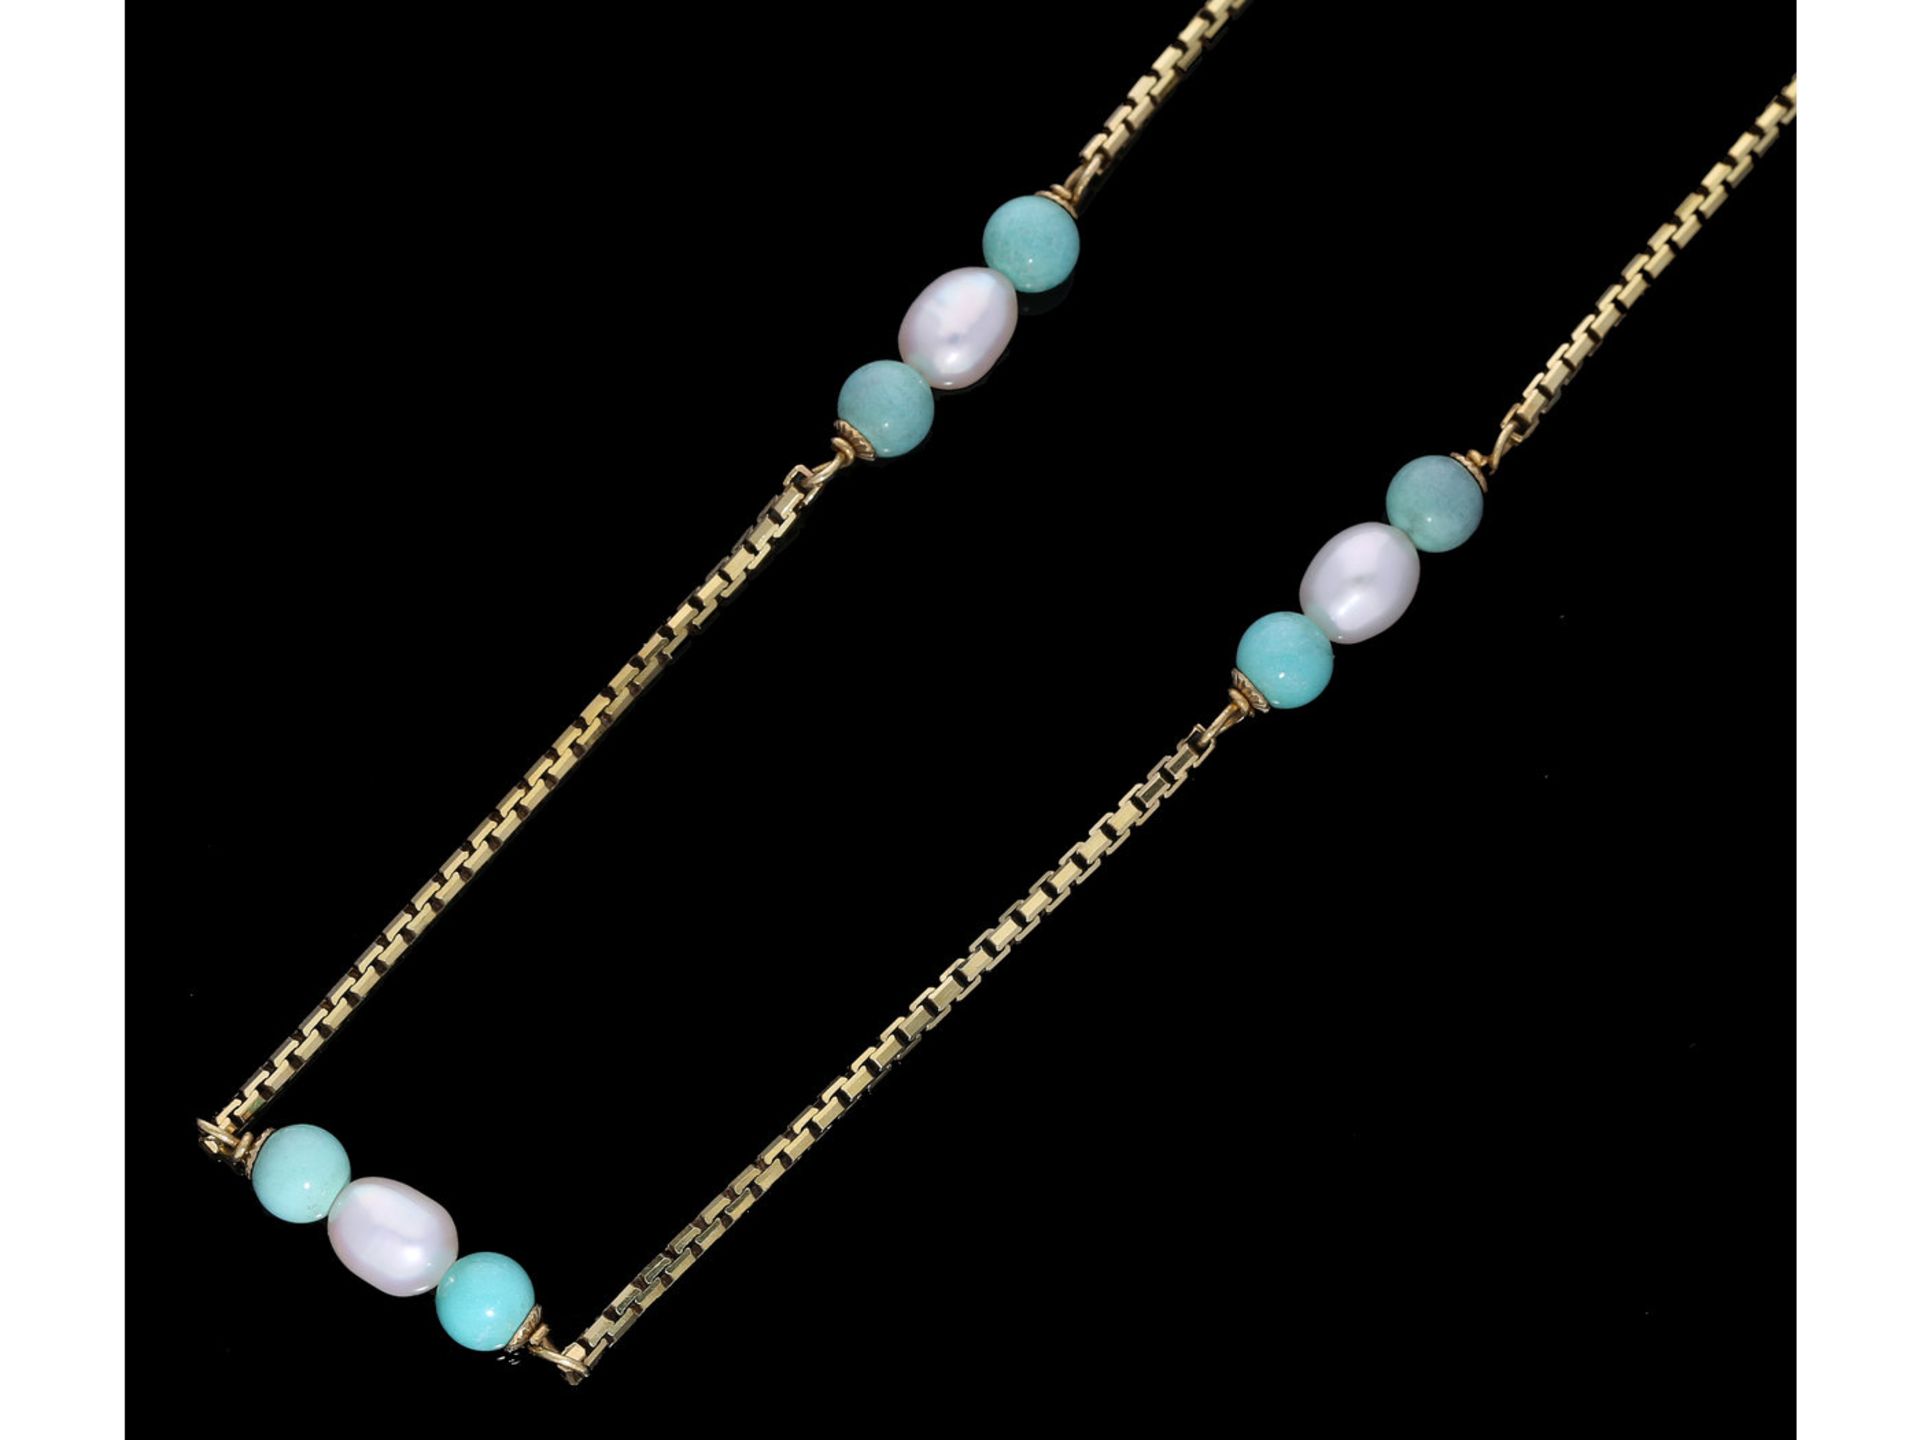 Kette/Collier: vintage Halskette mit Perlen und türkisfarbenen SteinenCa. 54cm lang, ca. 12,1g,